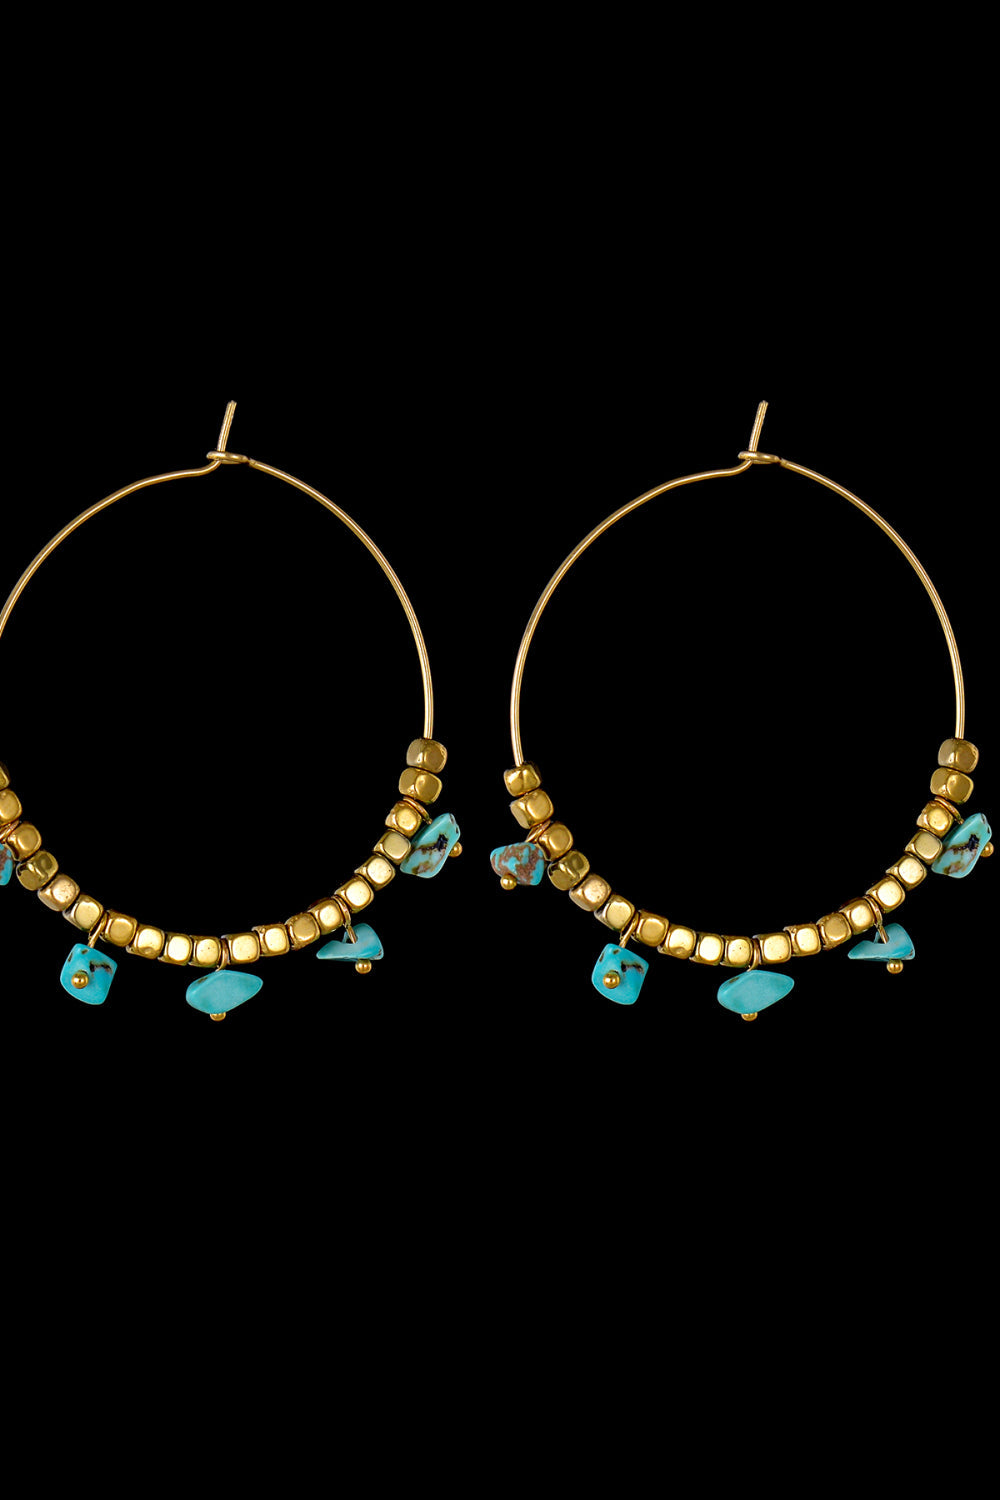 Turquoise Stainless Steel Hoop Earrings - Tropical Seas Clothing 